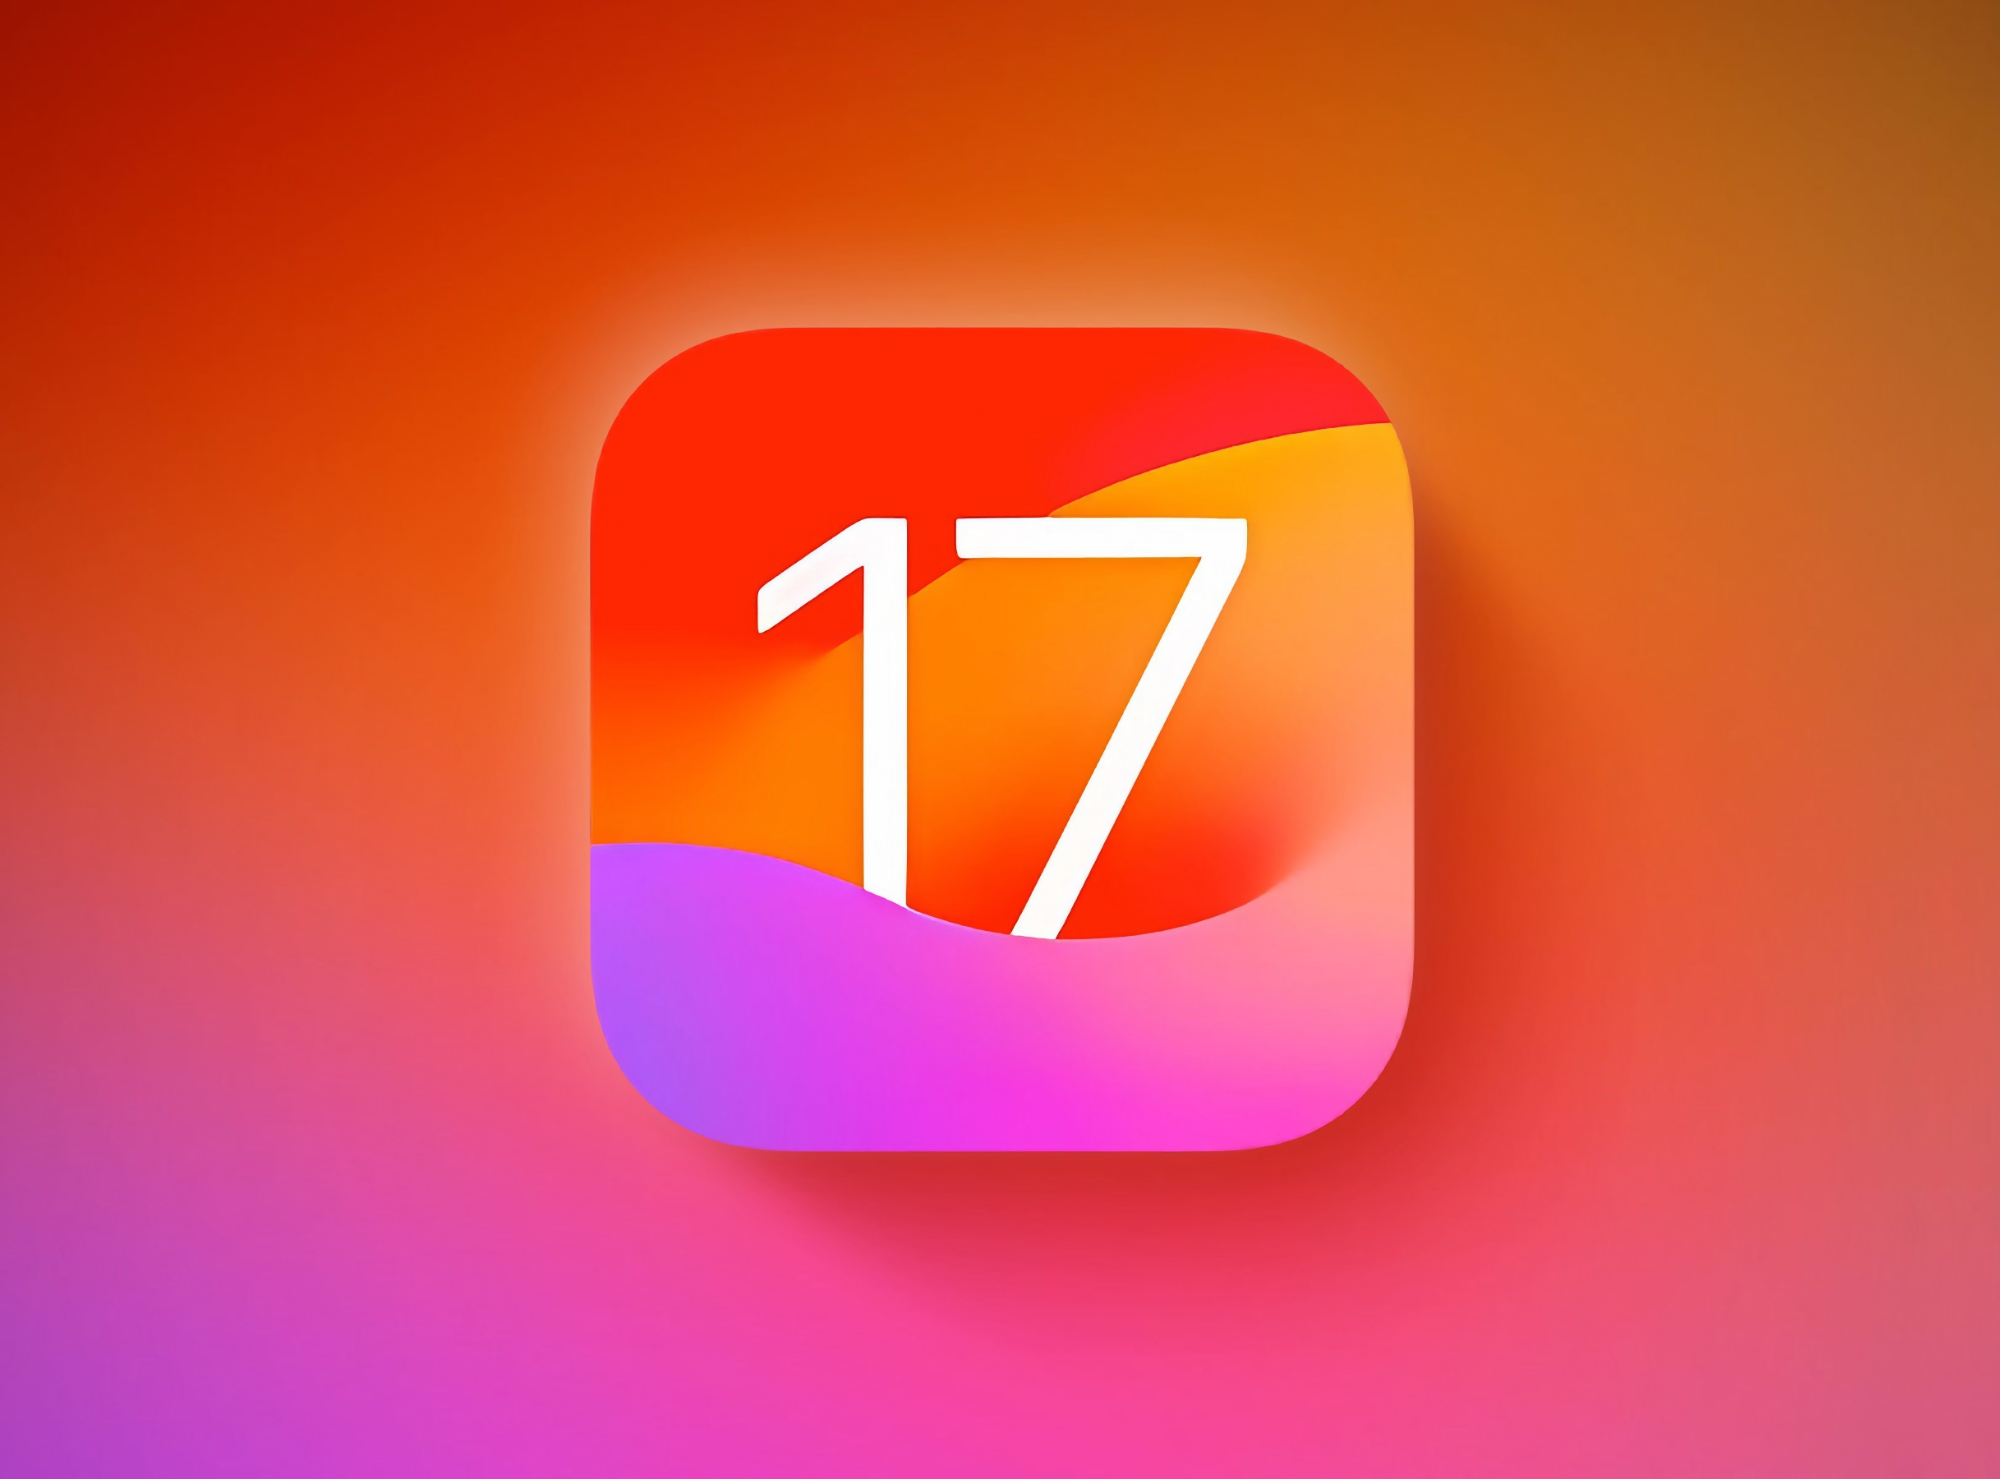 Apple har frigivet iOS 17.0.1 og iOS 17.0.2 til iPhone-brugere